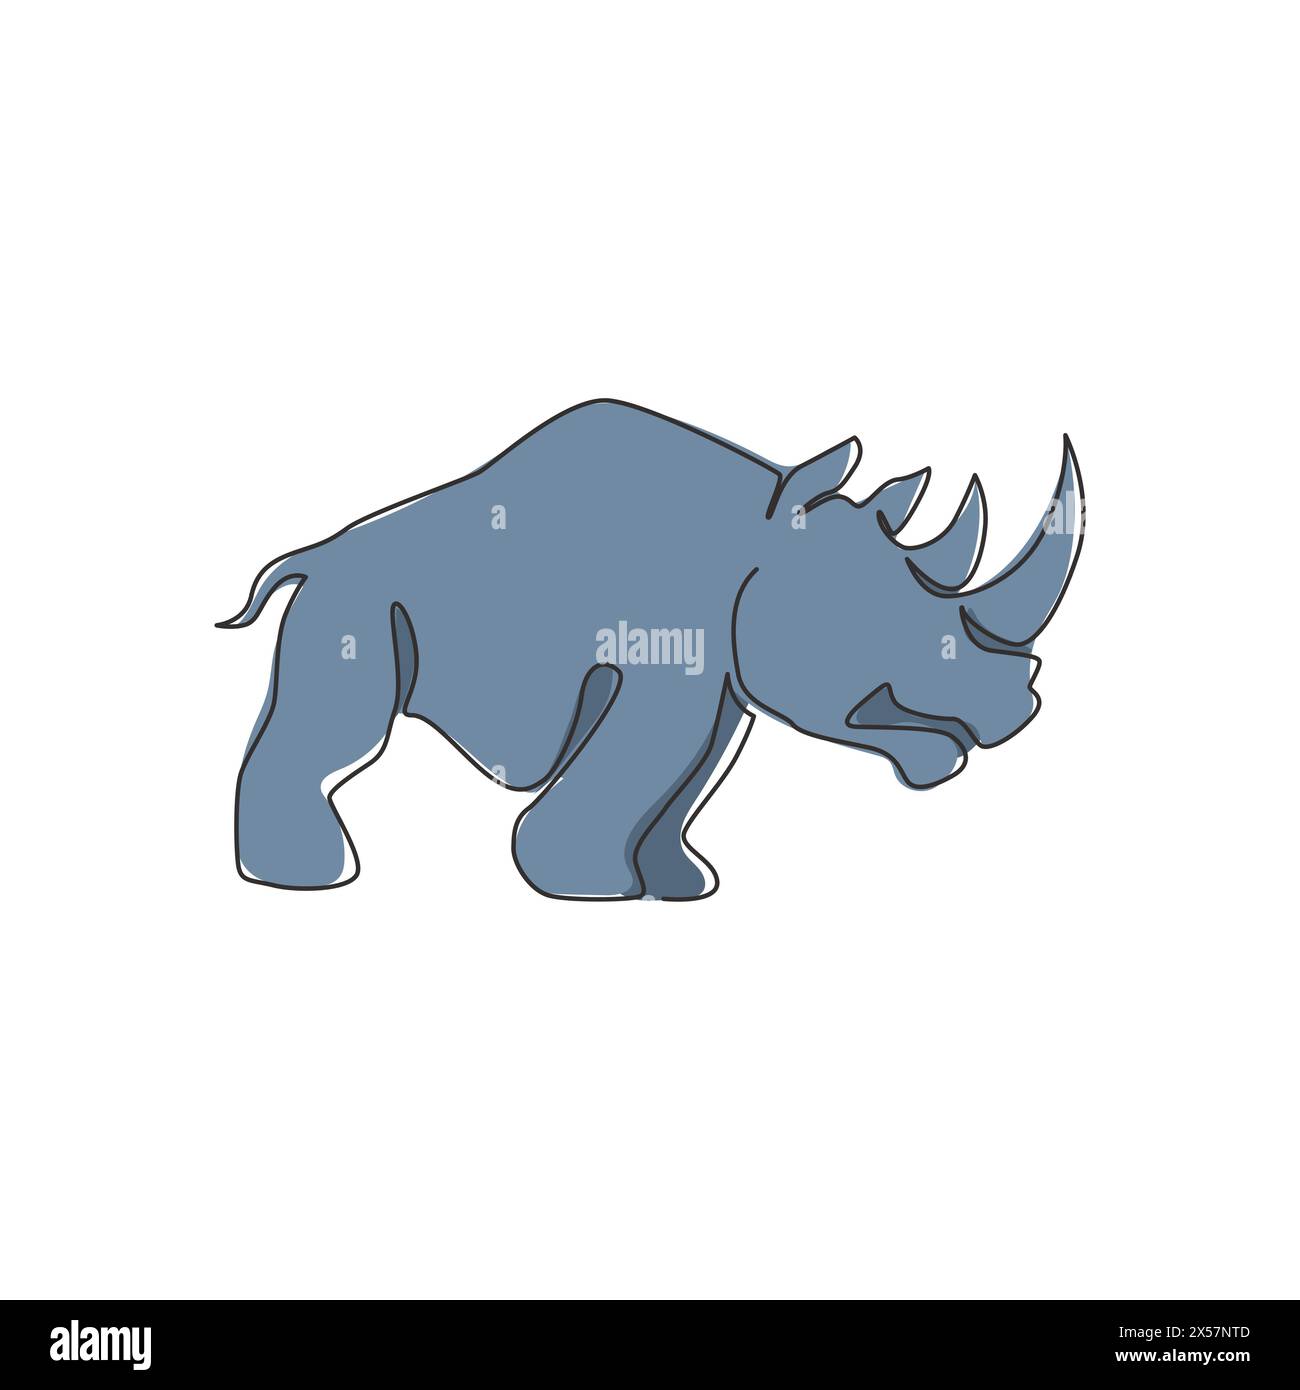 Dessin en ligne continue unique de grands rhinocéros africains pour l'identité du logo du parc national de conservation. Concept de mascotte animale Rhino pour zoo national sa Illustration de Vecteur